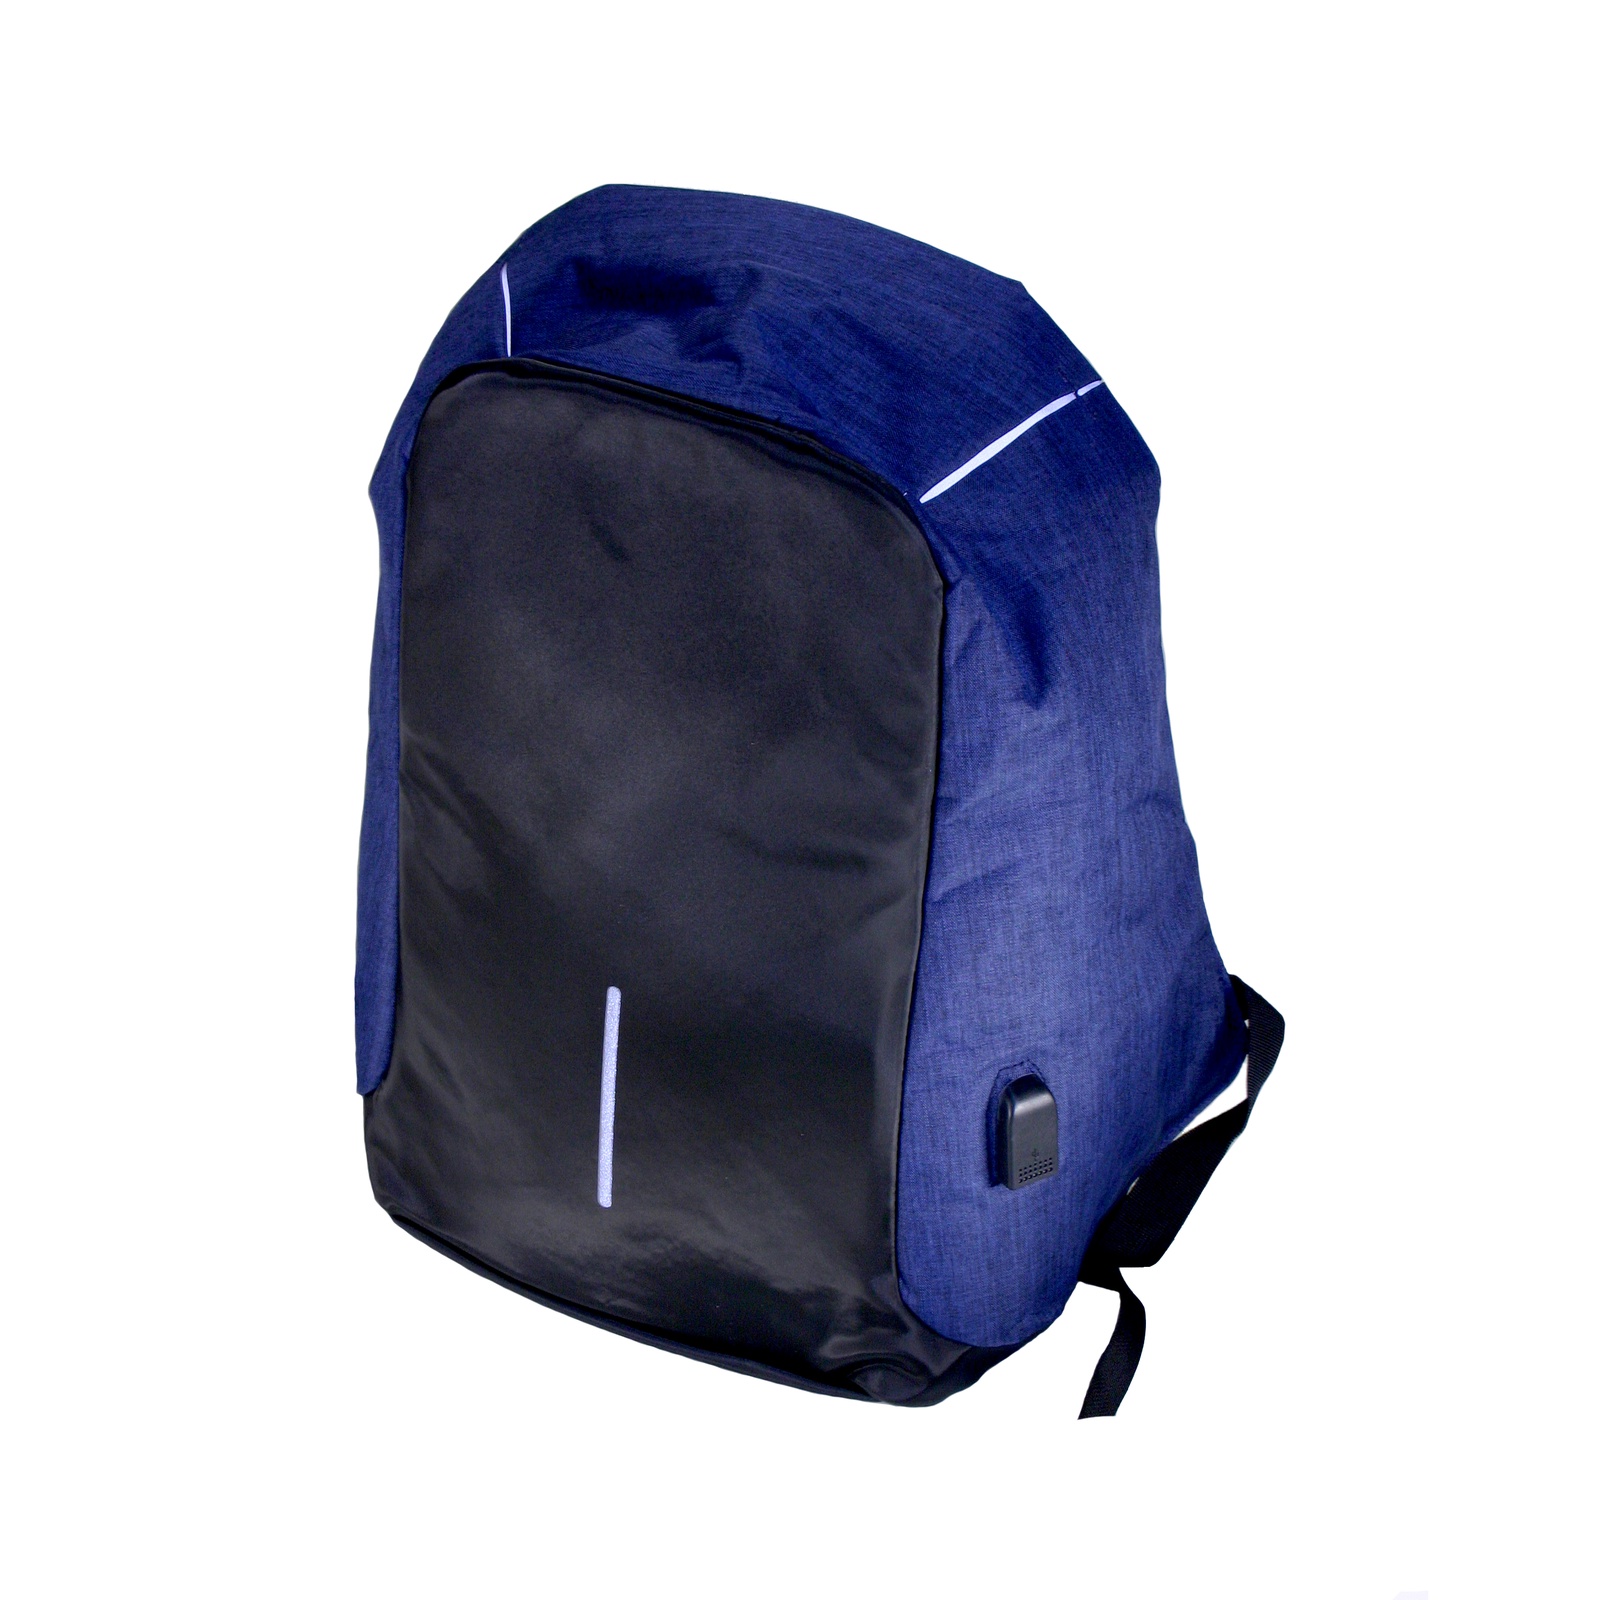 фото Антивандальный городской рюкзак, Lumo, LM-BP-12 антивор для ноутбука с защитой от карманников, много отделений,синий